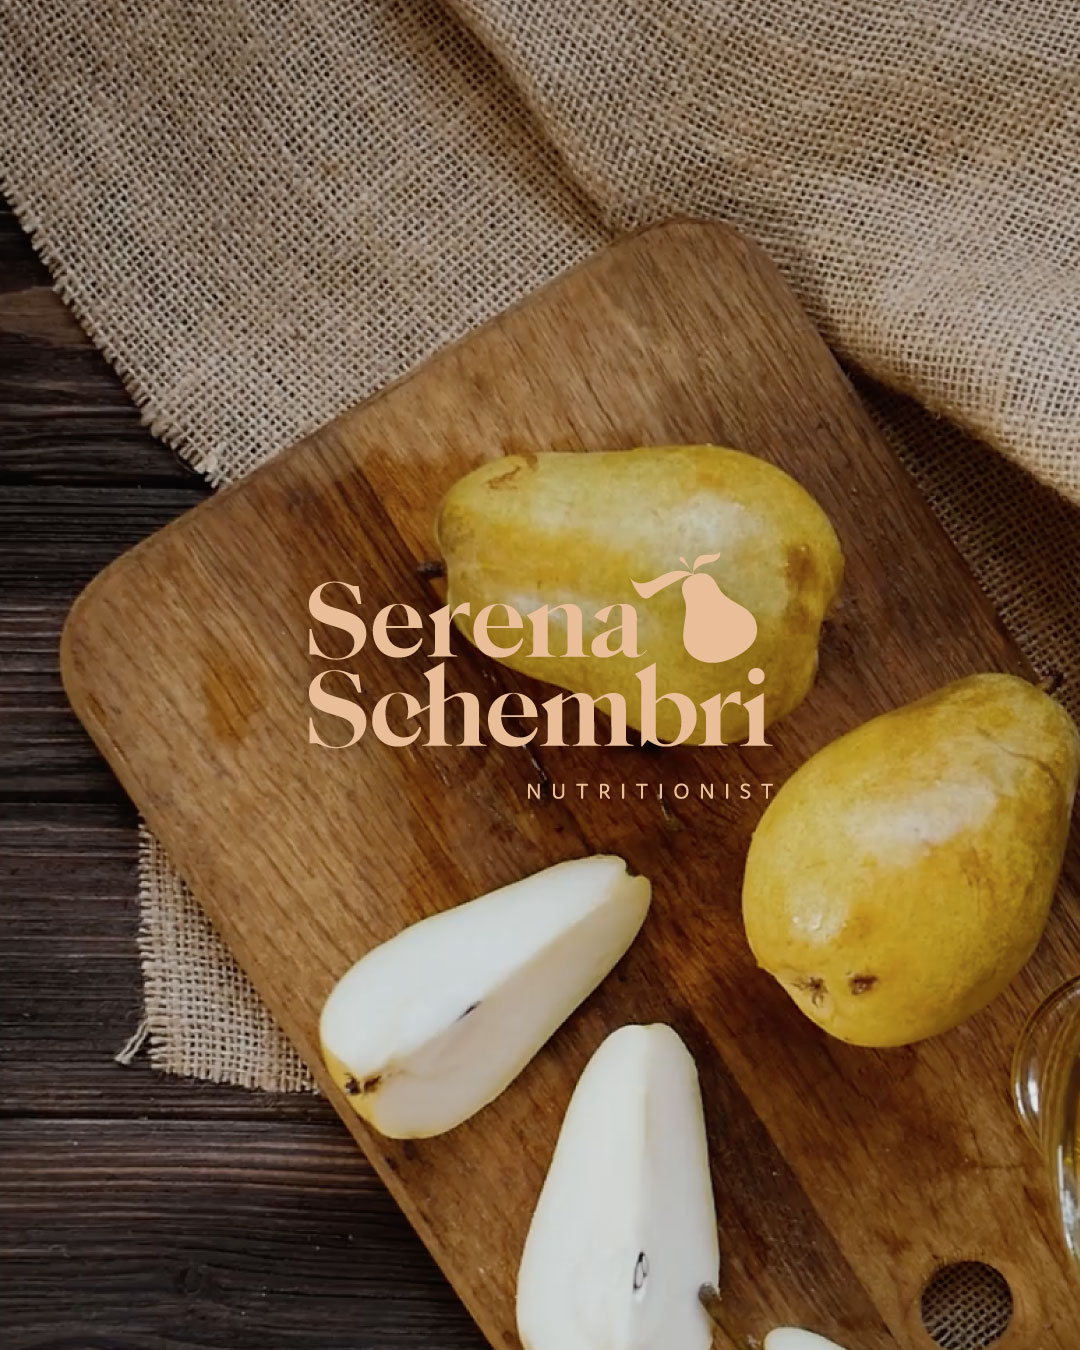 Serena Schembri Nutritionist logo design by NP Creative